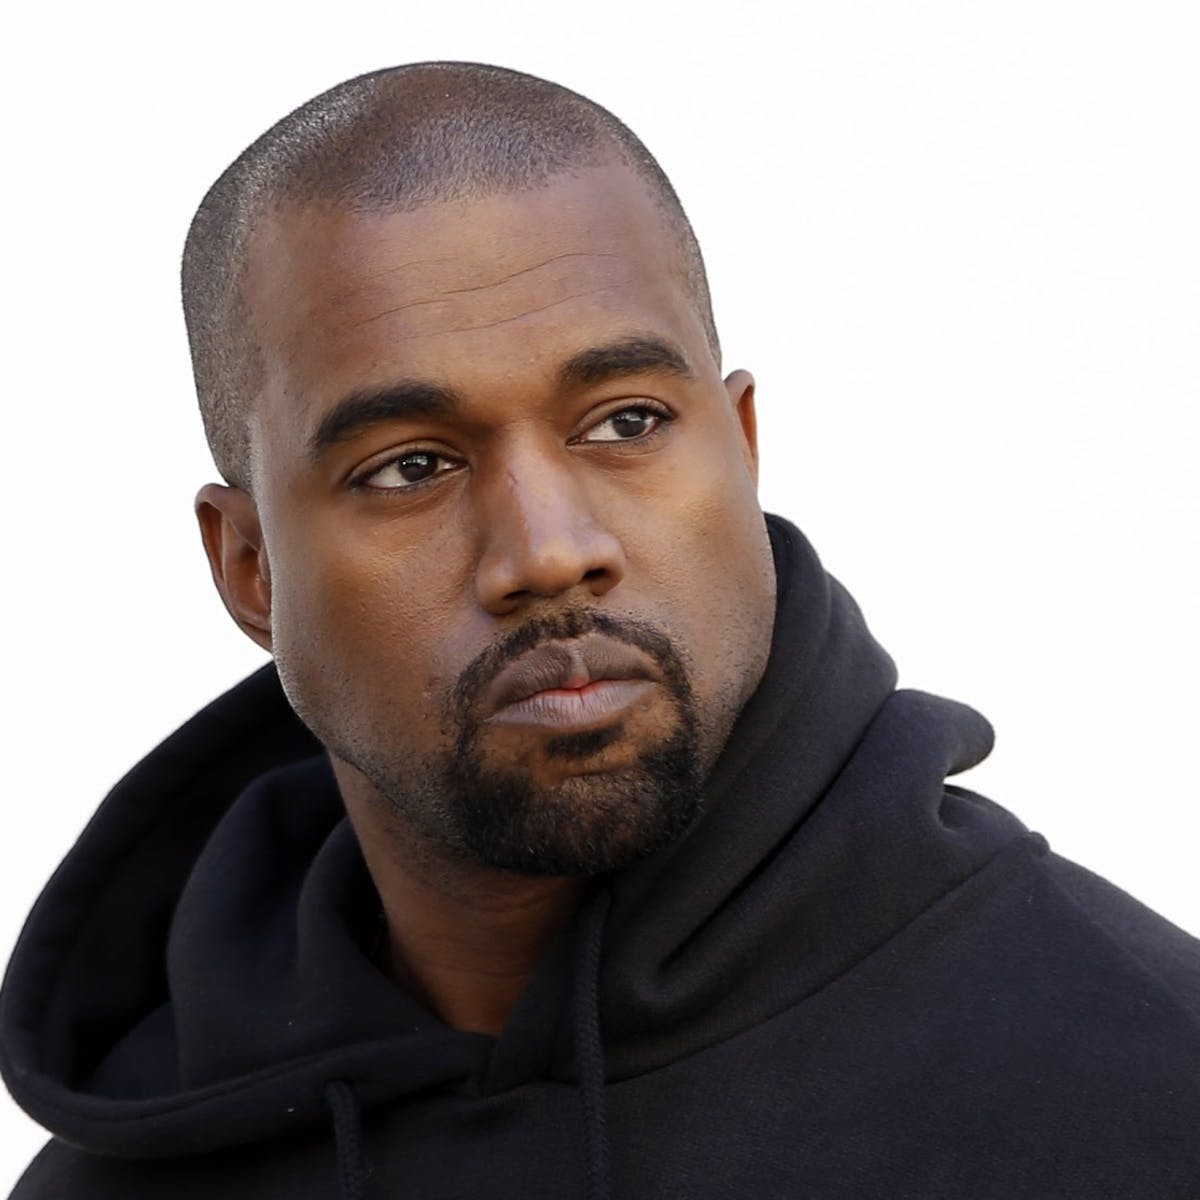 Kanye West drops his presidential bid